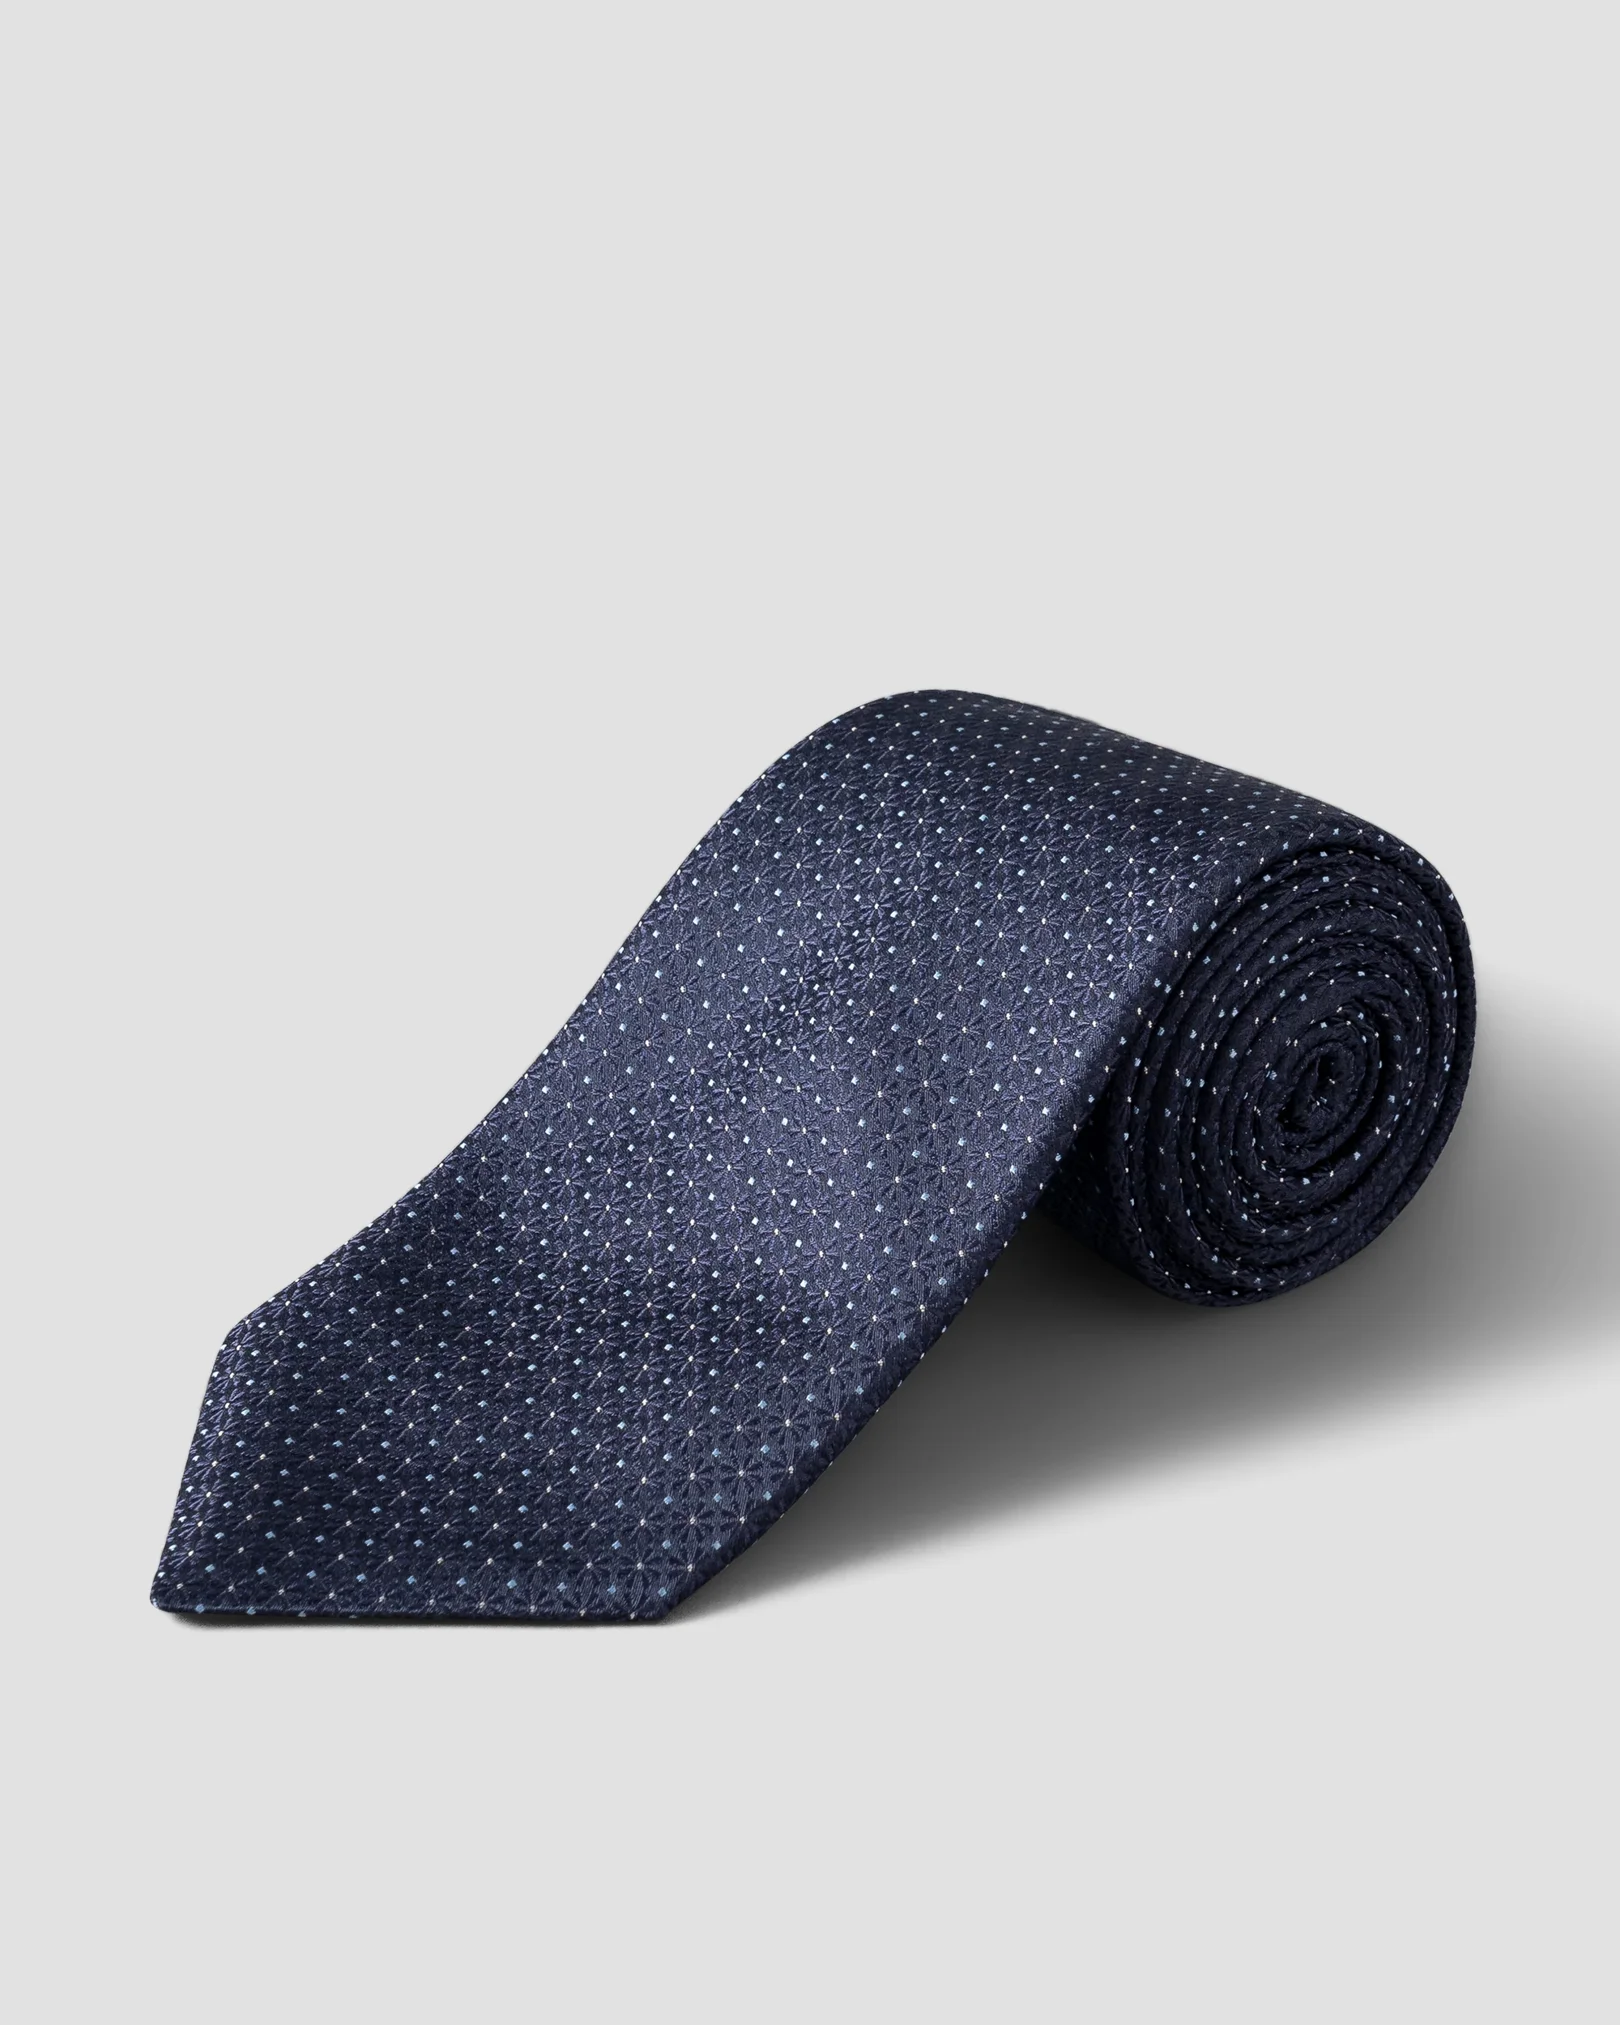 Cravate en soie imprimé floral bleu marine